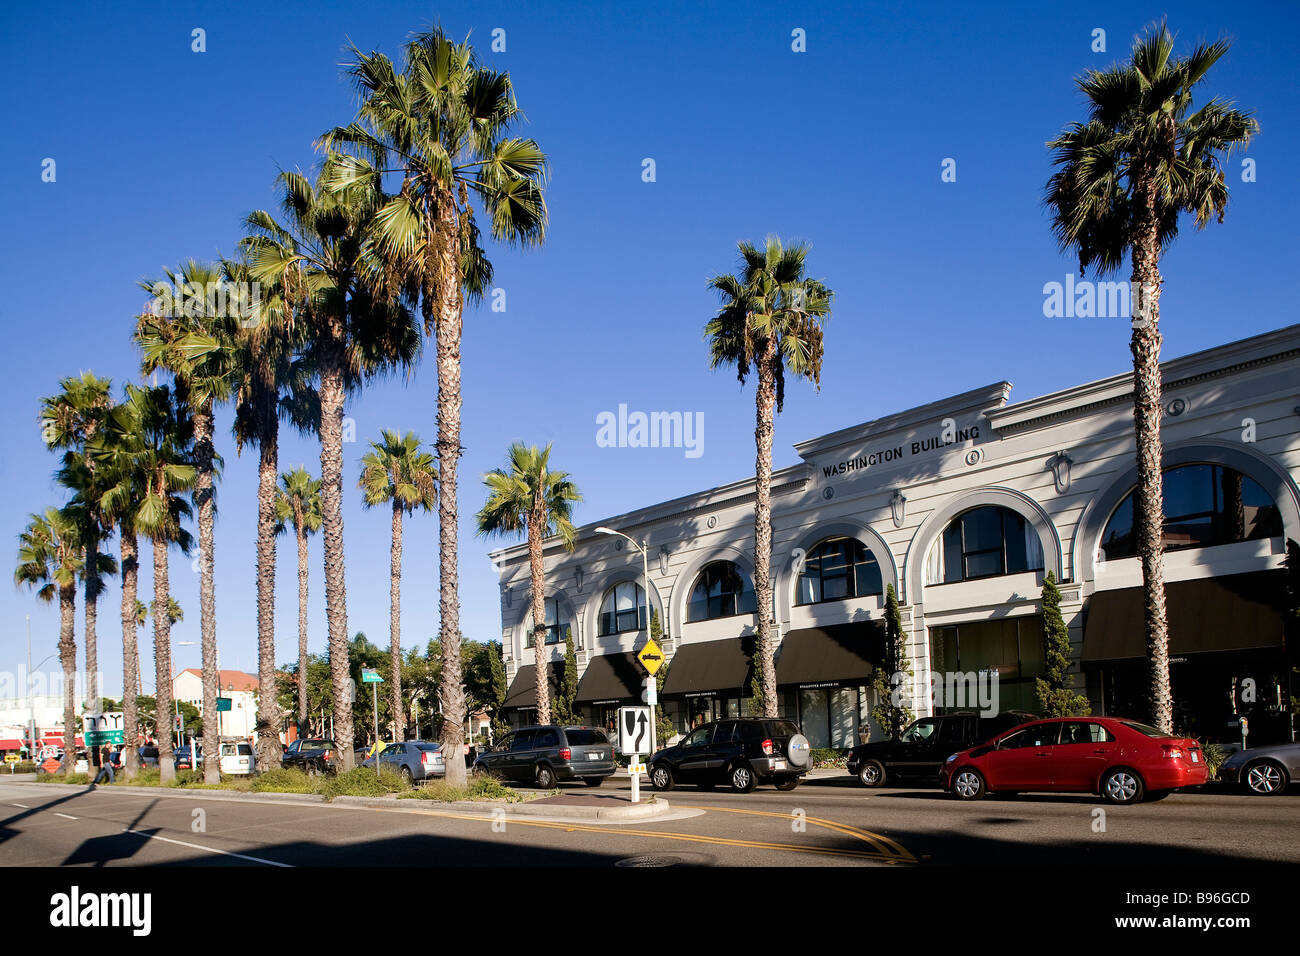 Estados Unidos, California, Los Angeles, Culver City, Washington Bld, el edificio de Washington desde 1926 Foto de stock